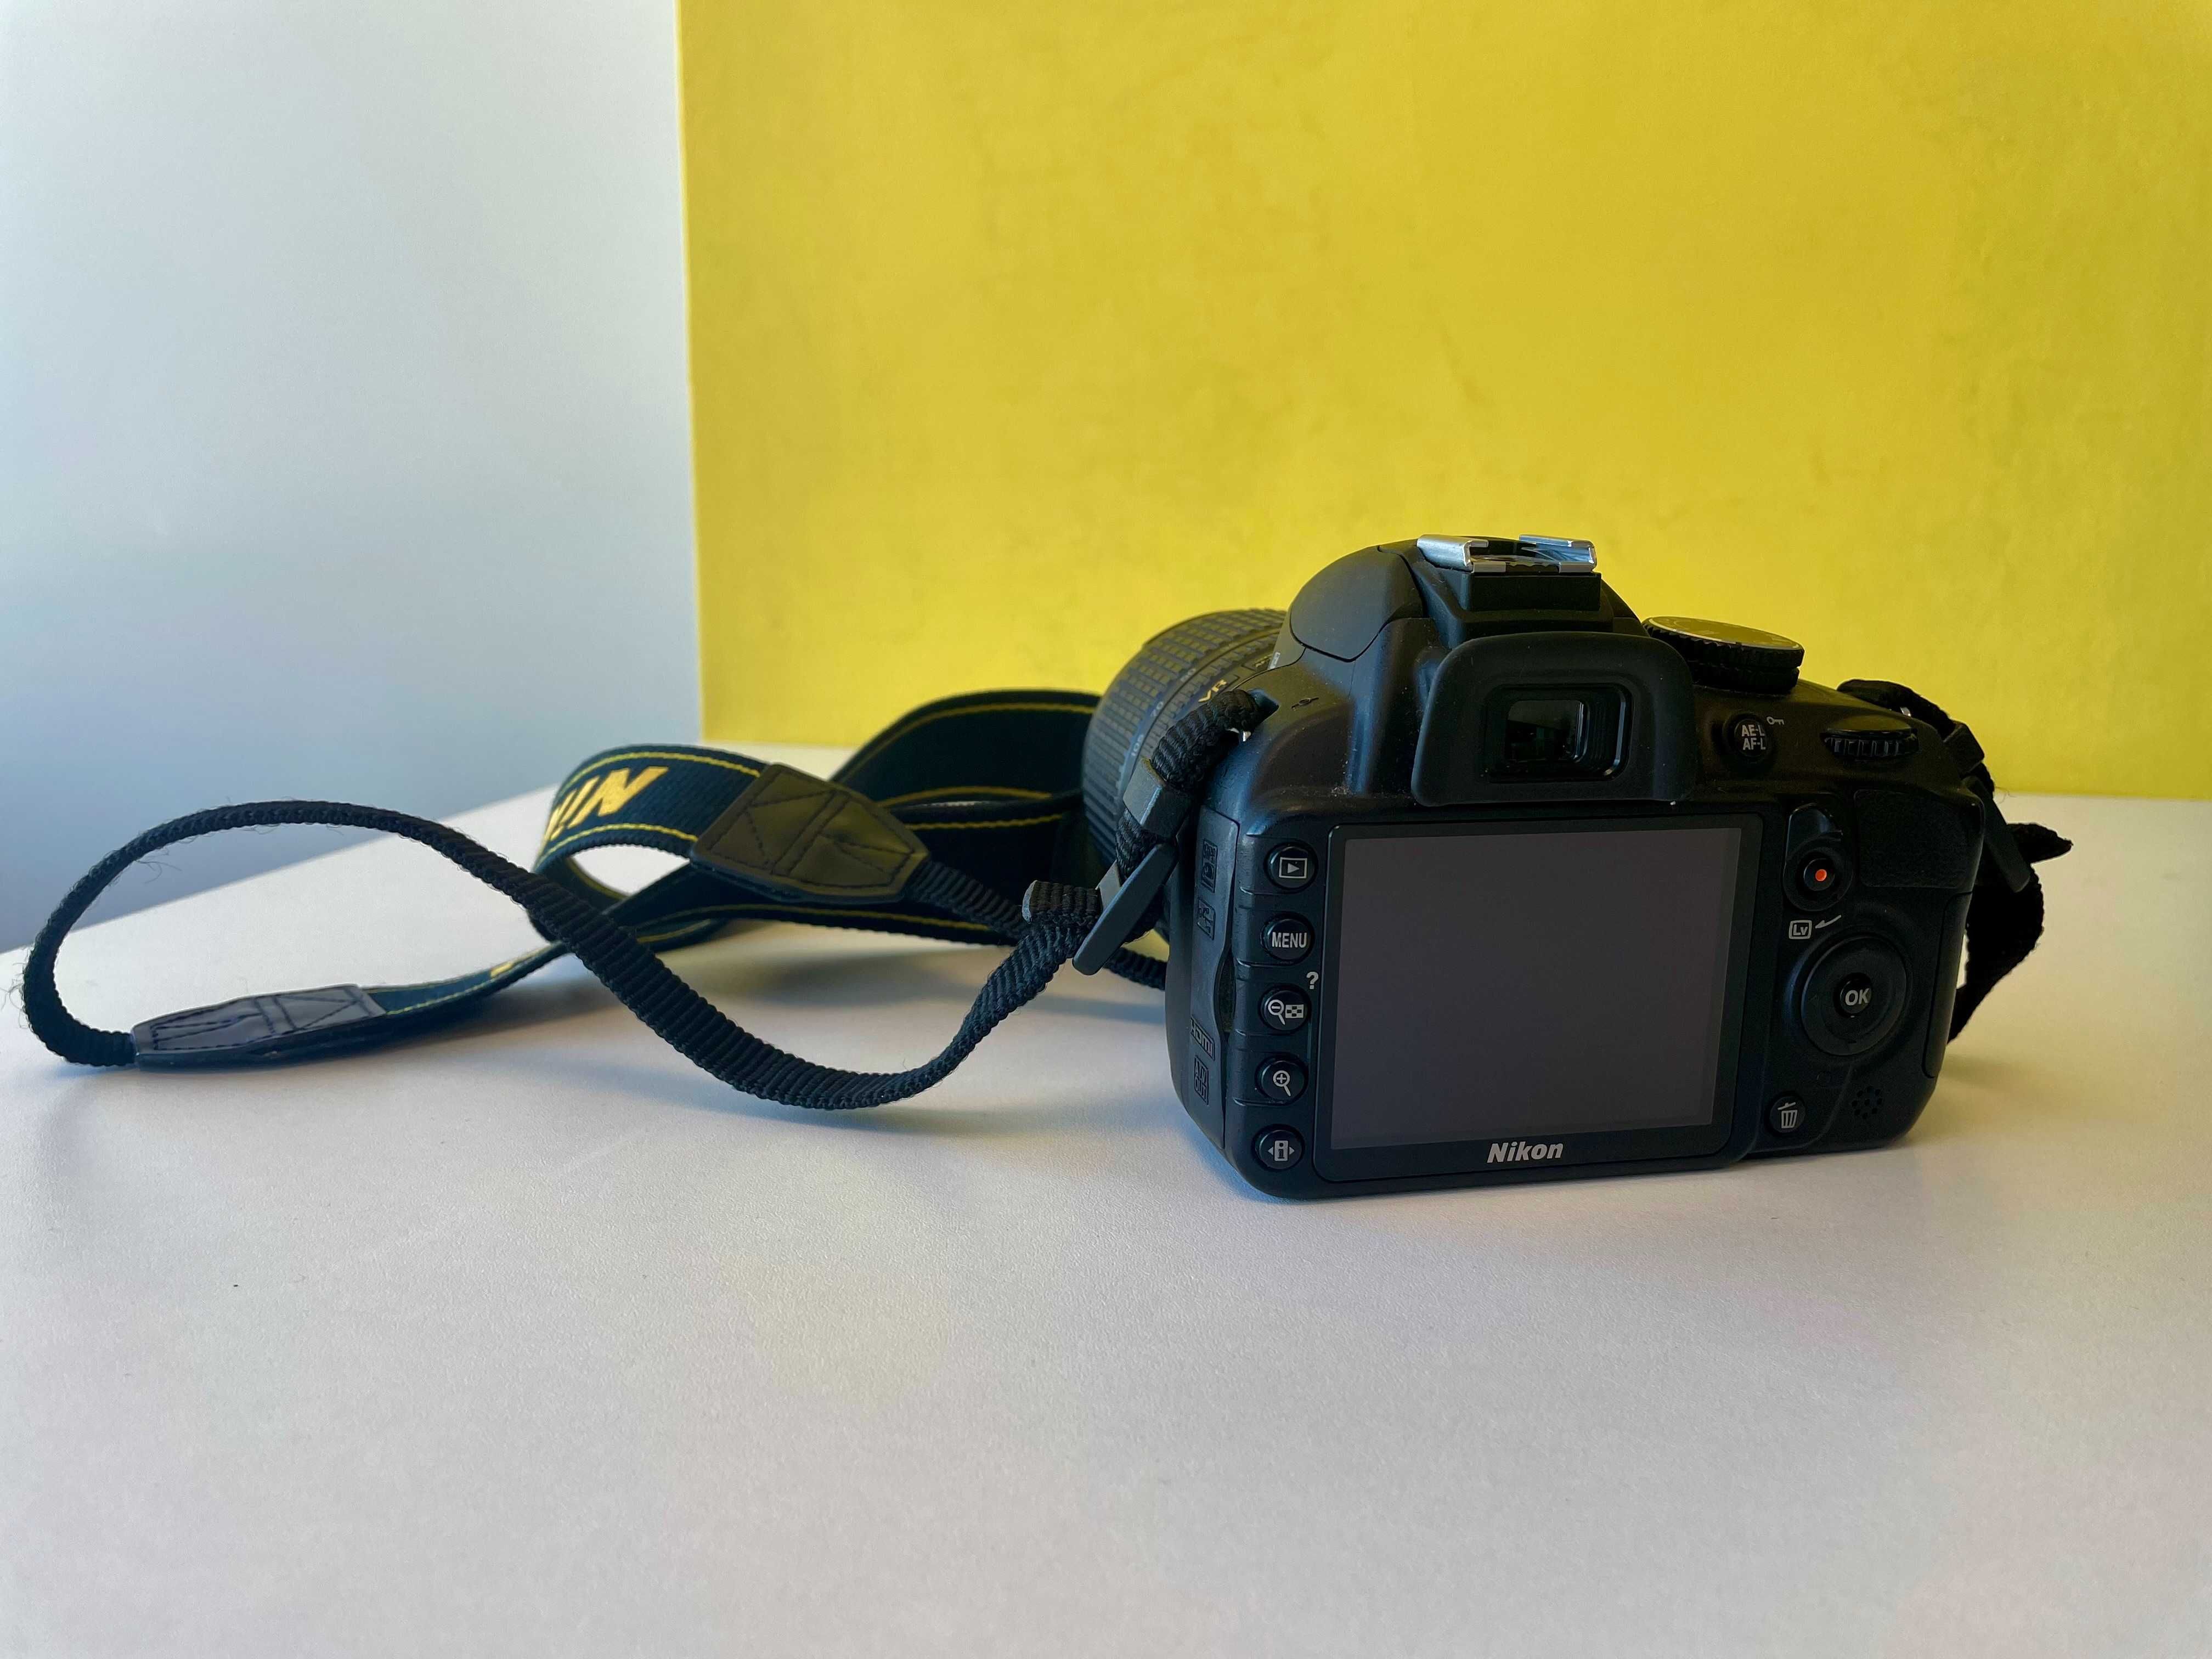 Nikon D3100 + Nikkor AF-S 18-105